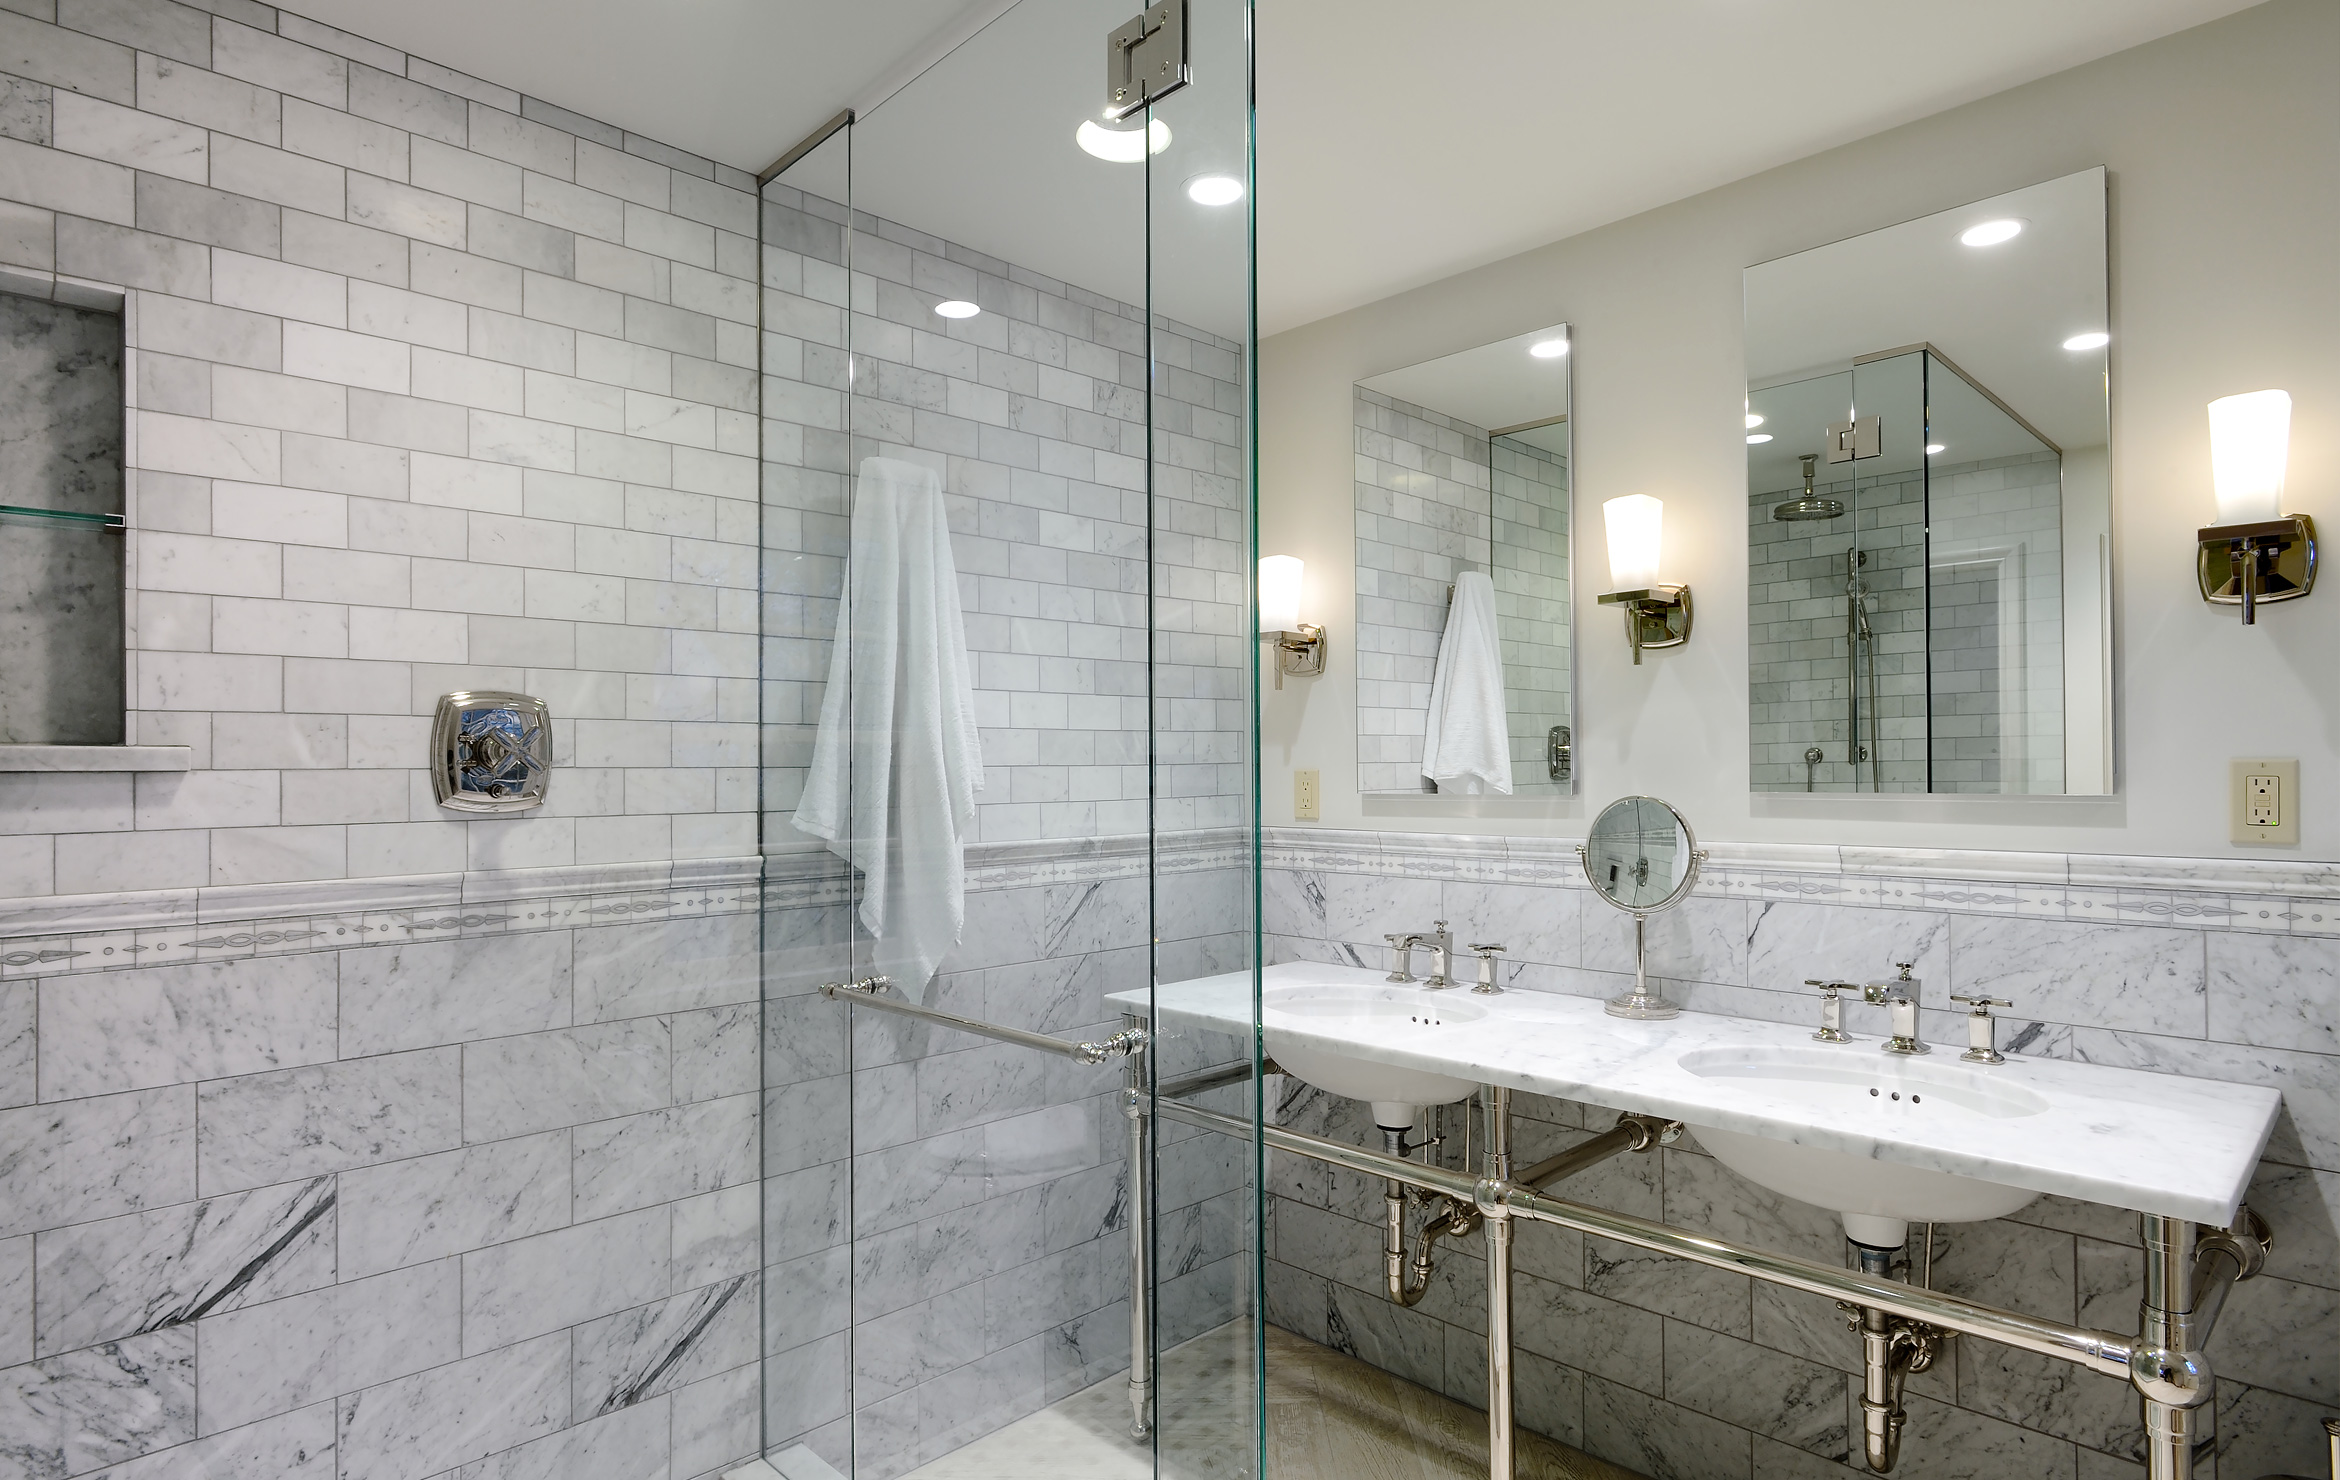 Bathroom Remodeling 7 smart strategies for bathroom remodeling PTELIYS